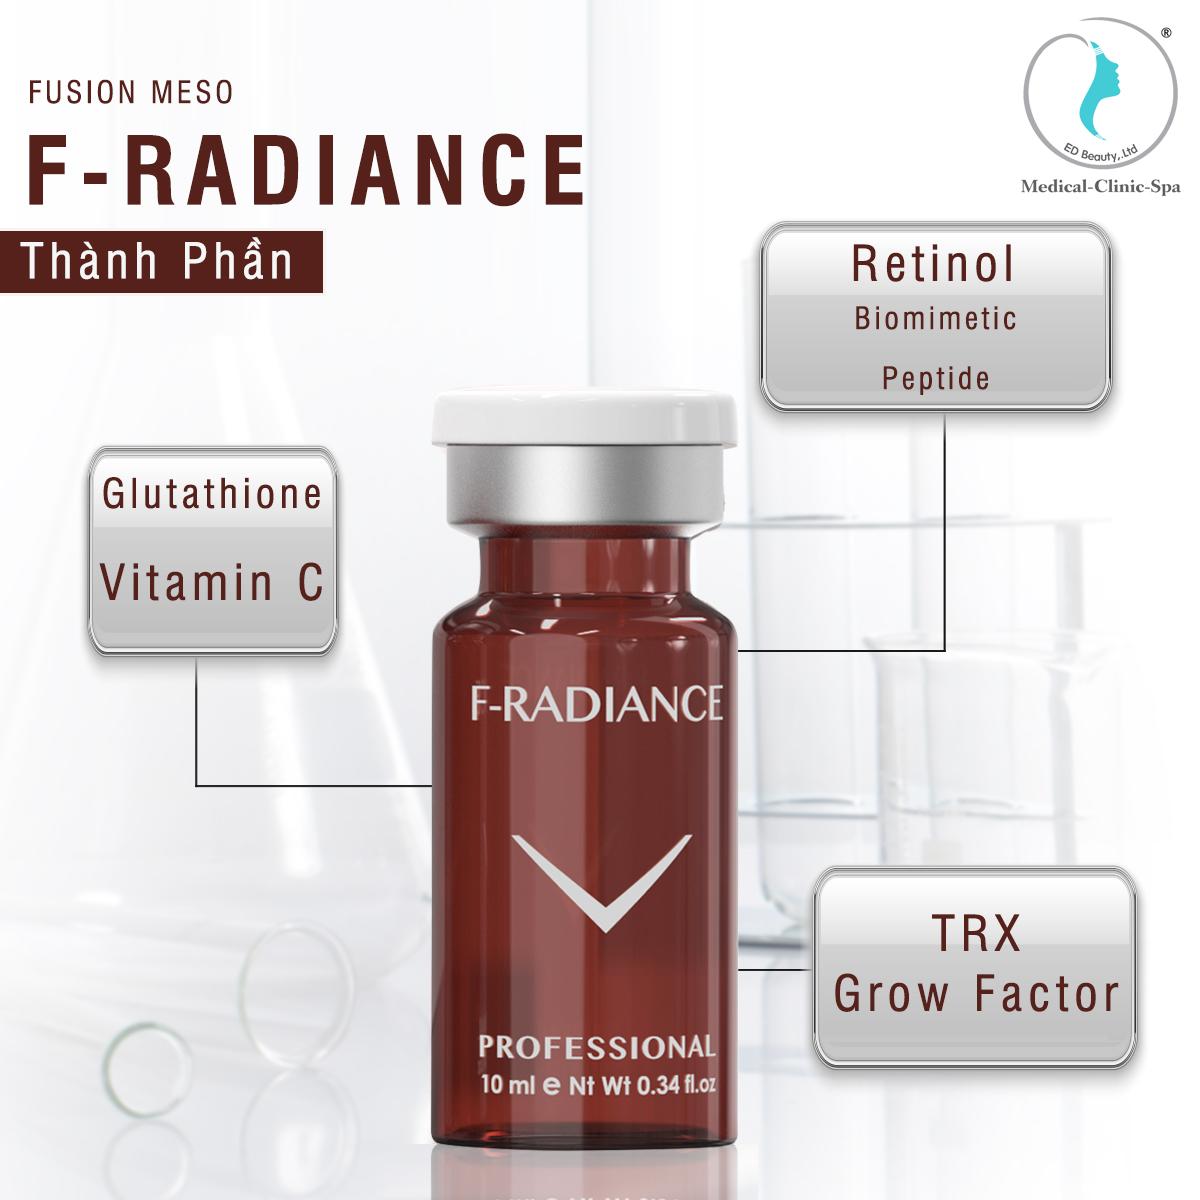 Fusion Meso F-Radiance điều trị nám, cải thiện gia tăng sắc tố da